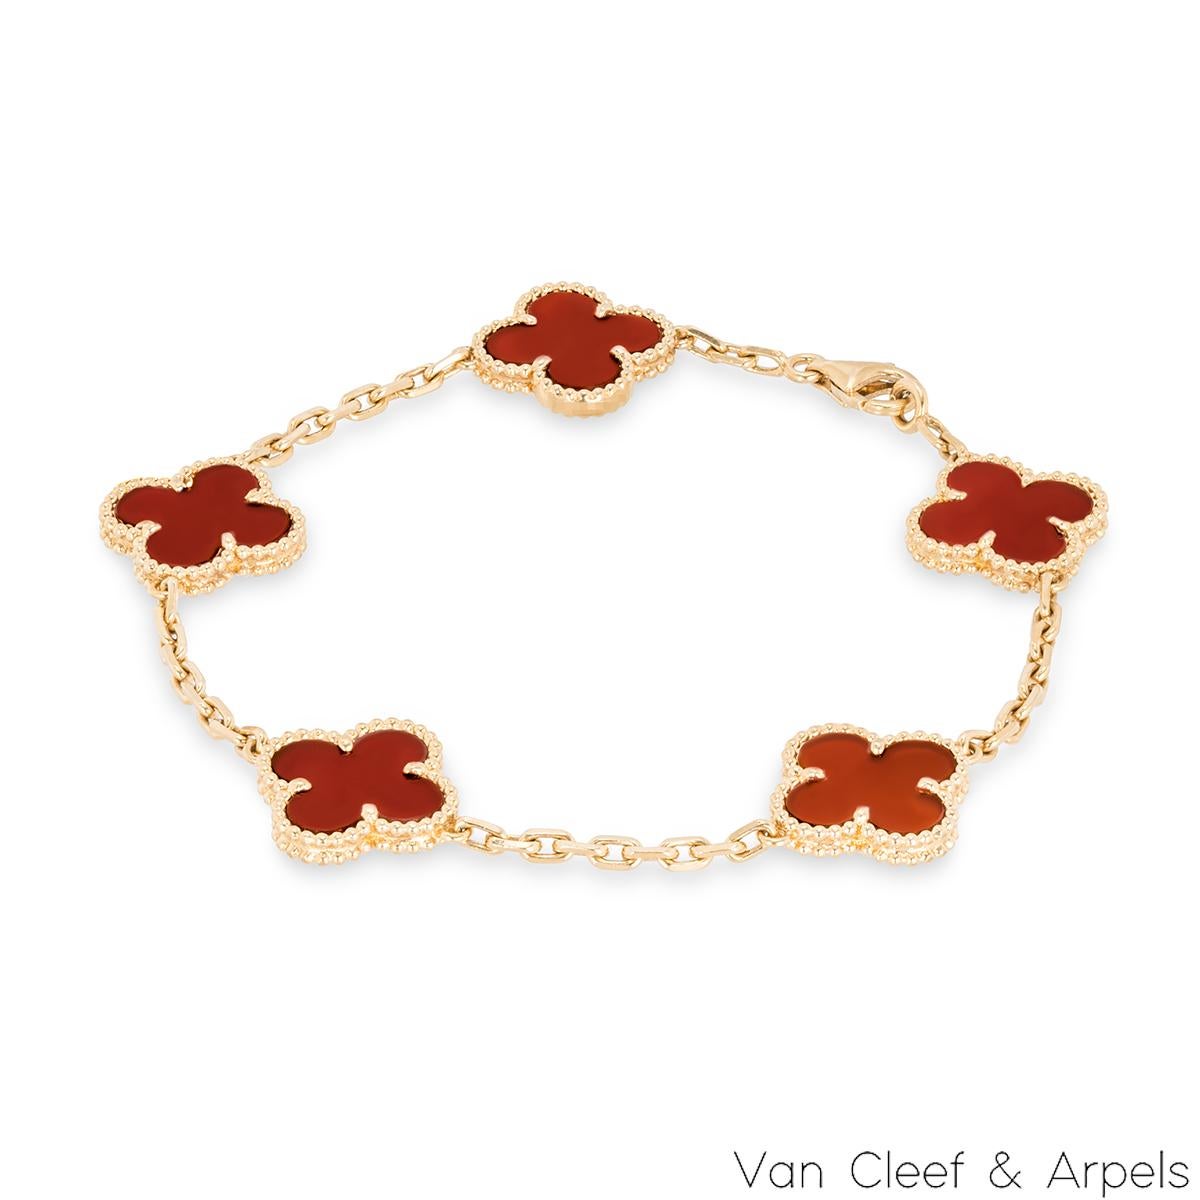 Ravissant bracelet en cornaline en or jaune 18 carats de la collection Vintage Alhambra de Van Cleef and Arpels. Le bracelet présente 5 motifs de trèfle emblématiques, chacun serti d'un bord perlé et d'une incrustation de cornaline, disposés sur